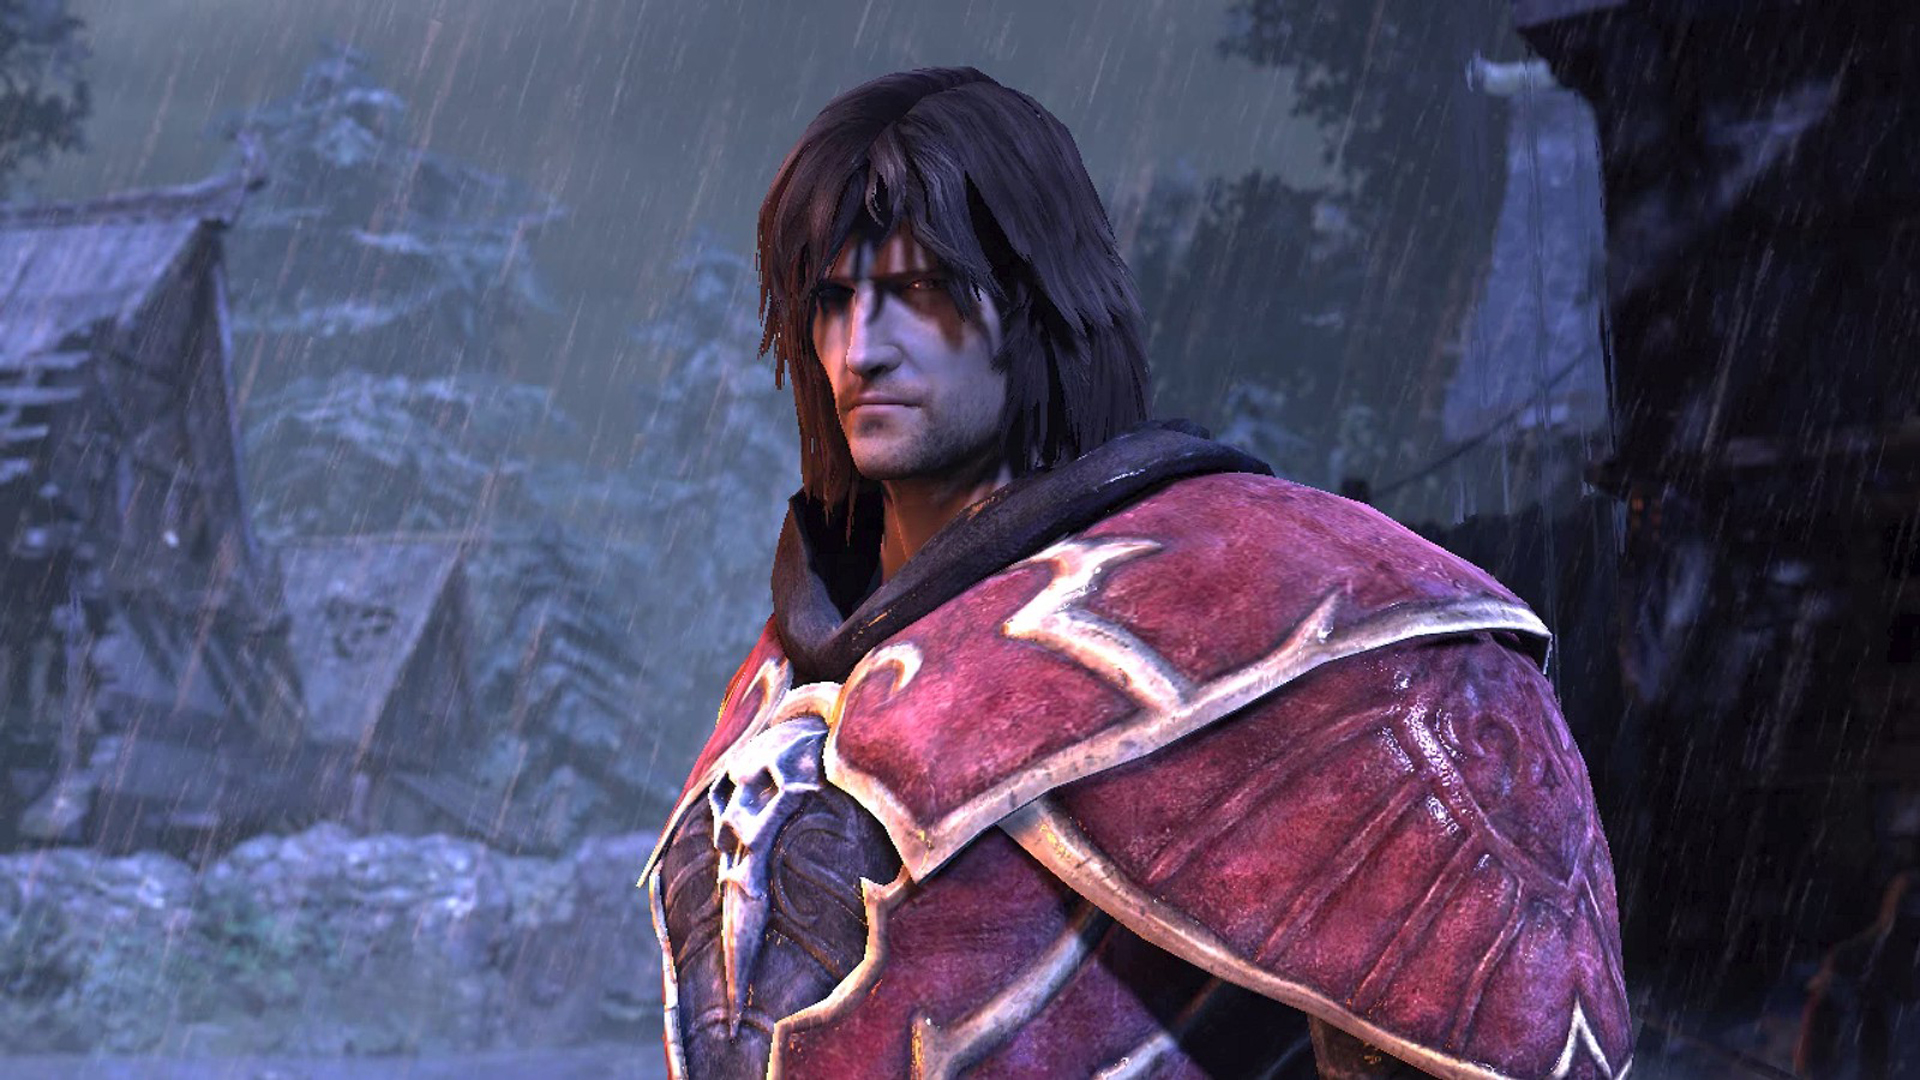 ผู้ชายที่มีผมยาวและเกราะสีแดงฟุ่มเฟือยยืนเศร้าในสายฝนในหนึ่งในเกมแวมไพร์ที่ดีที่สุด Castlevania Lords of Shadow